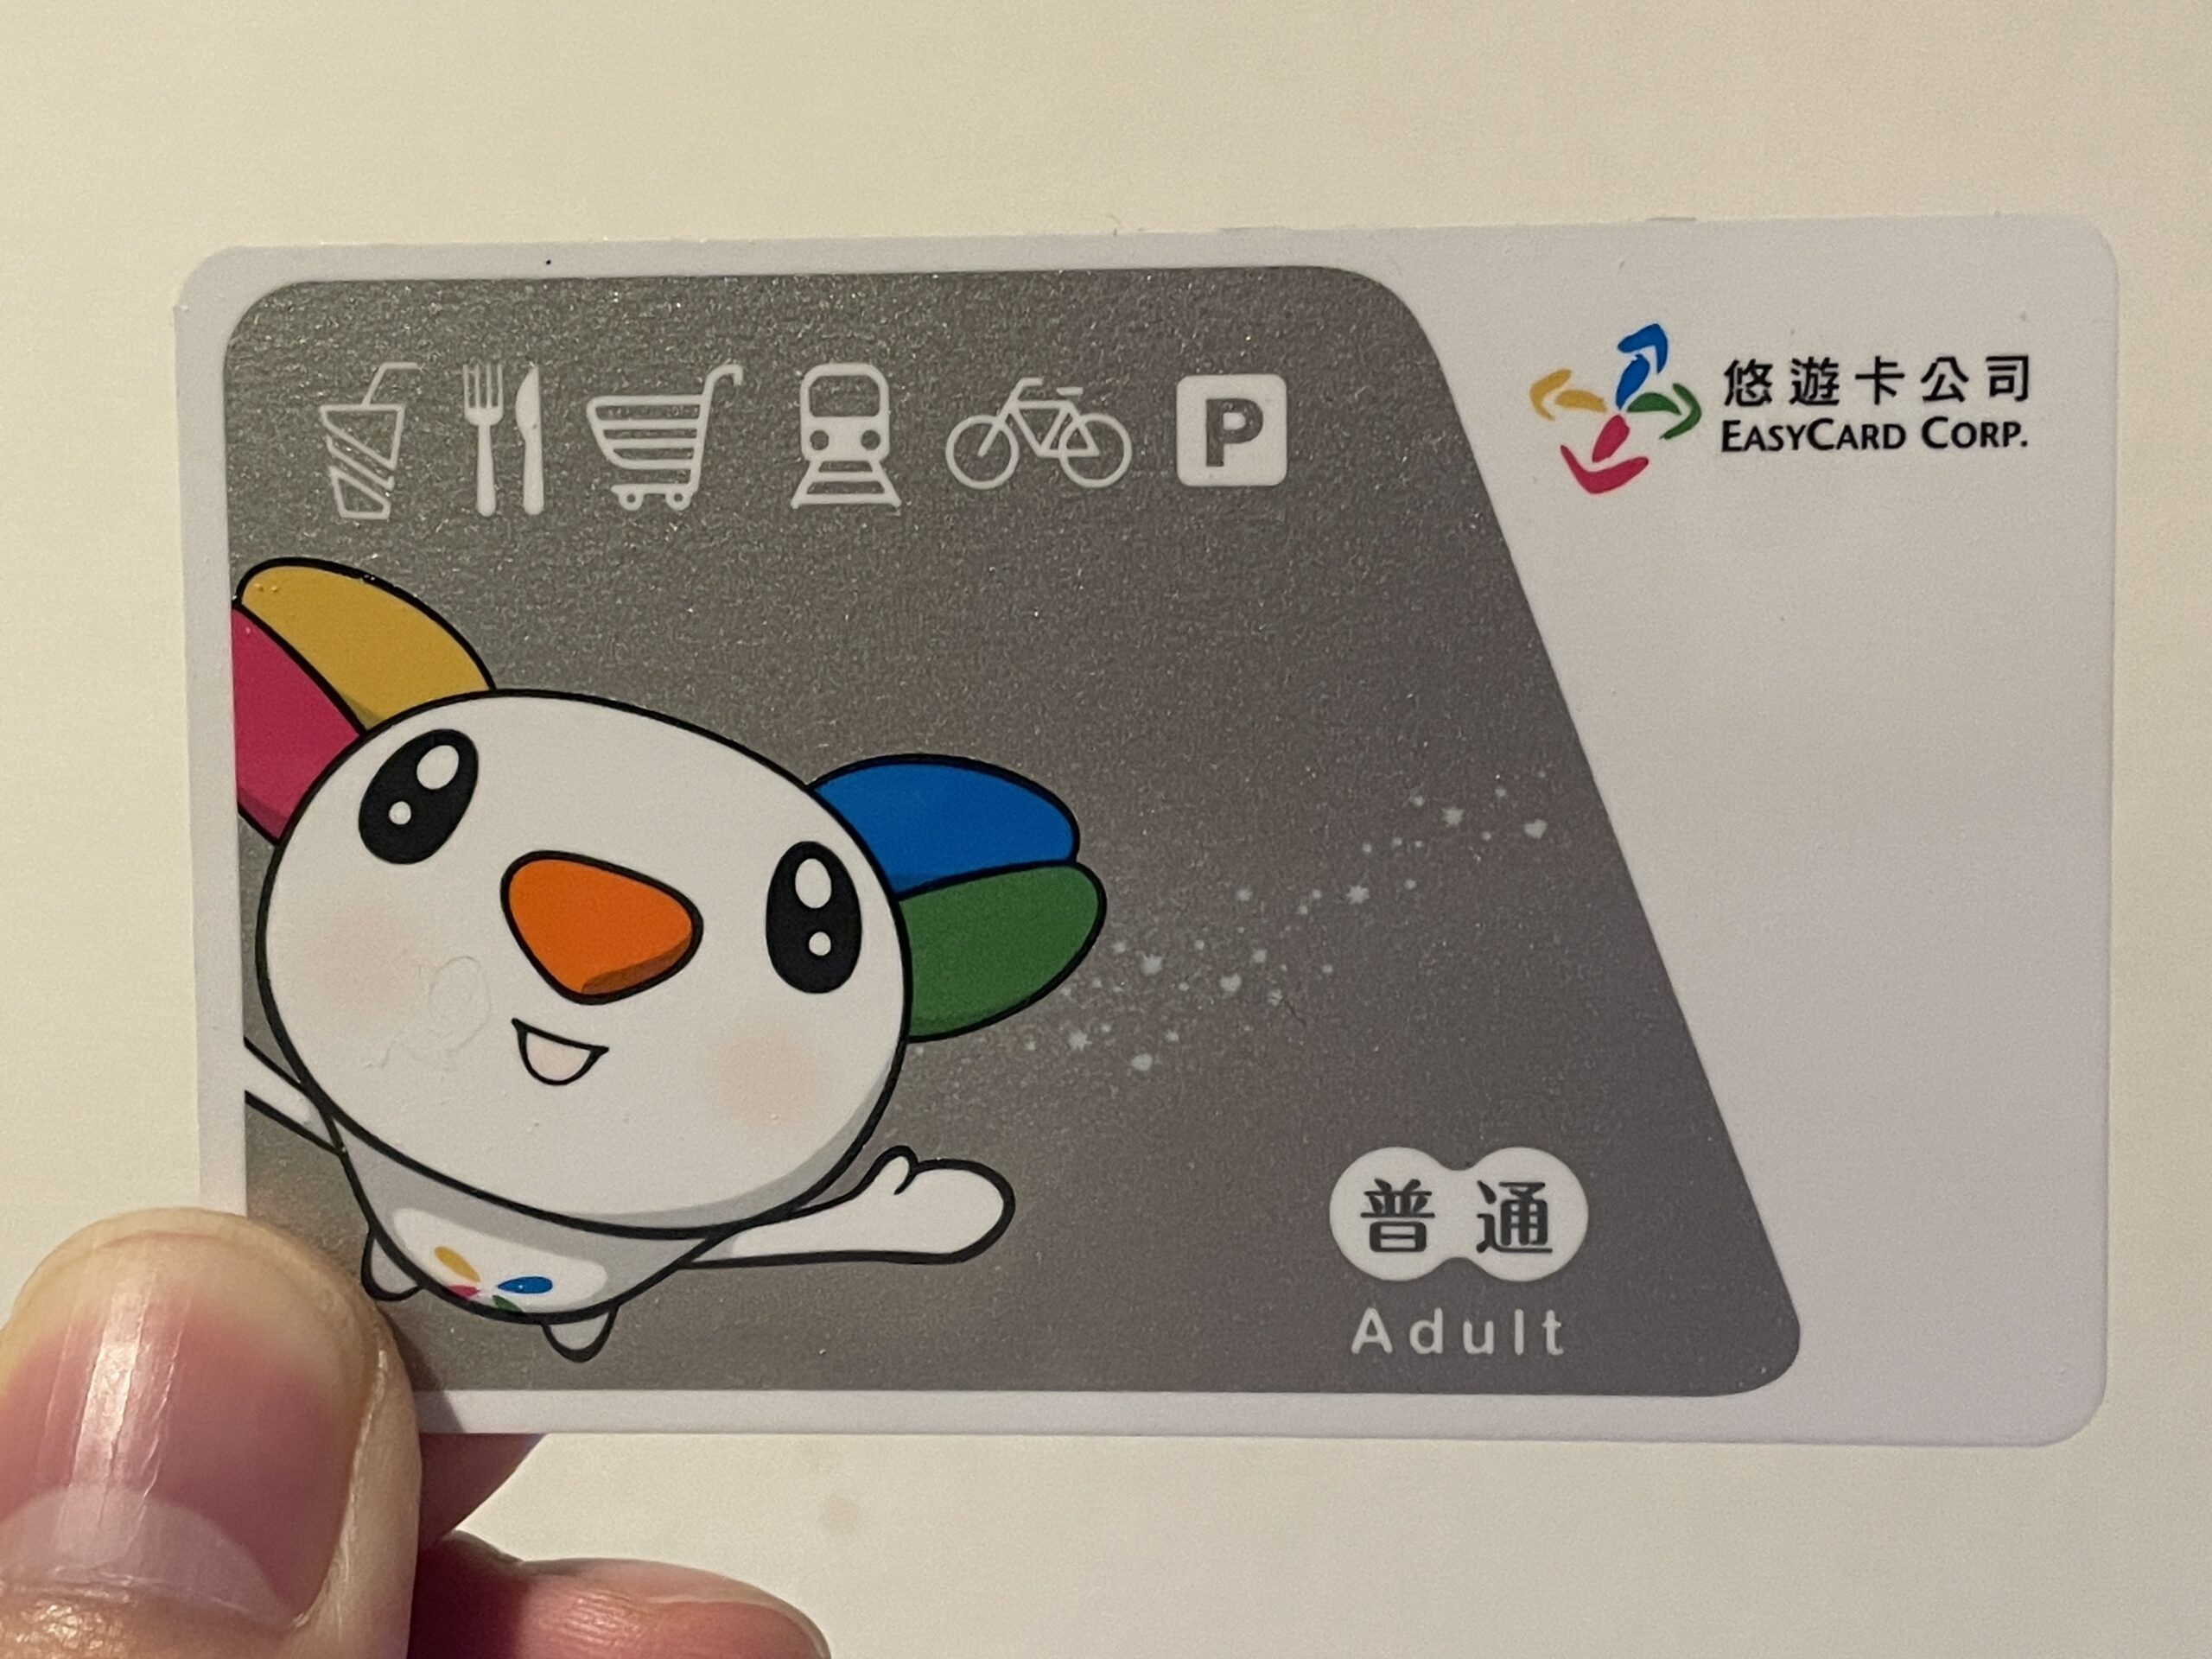 台湾交通系ICカード『悠遊カード(EASY CARD)』の購入方法